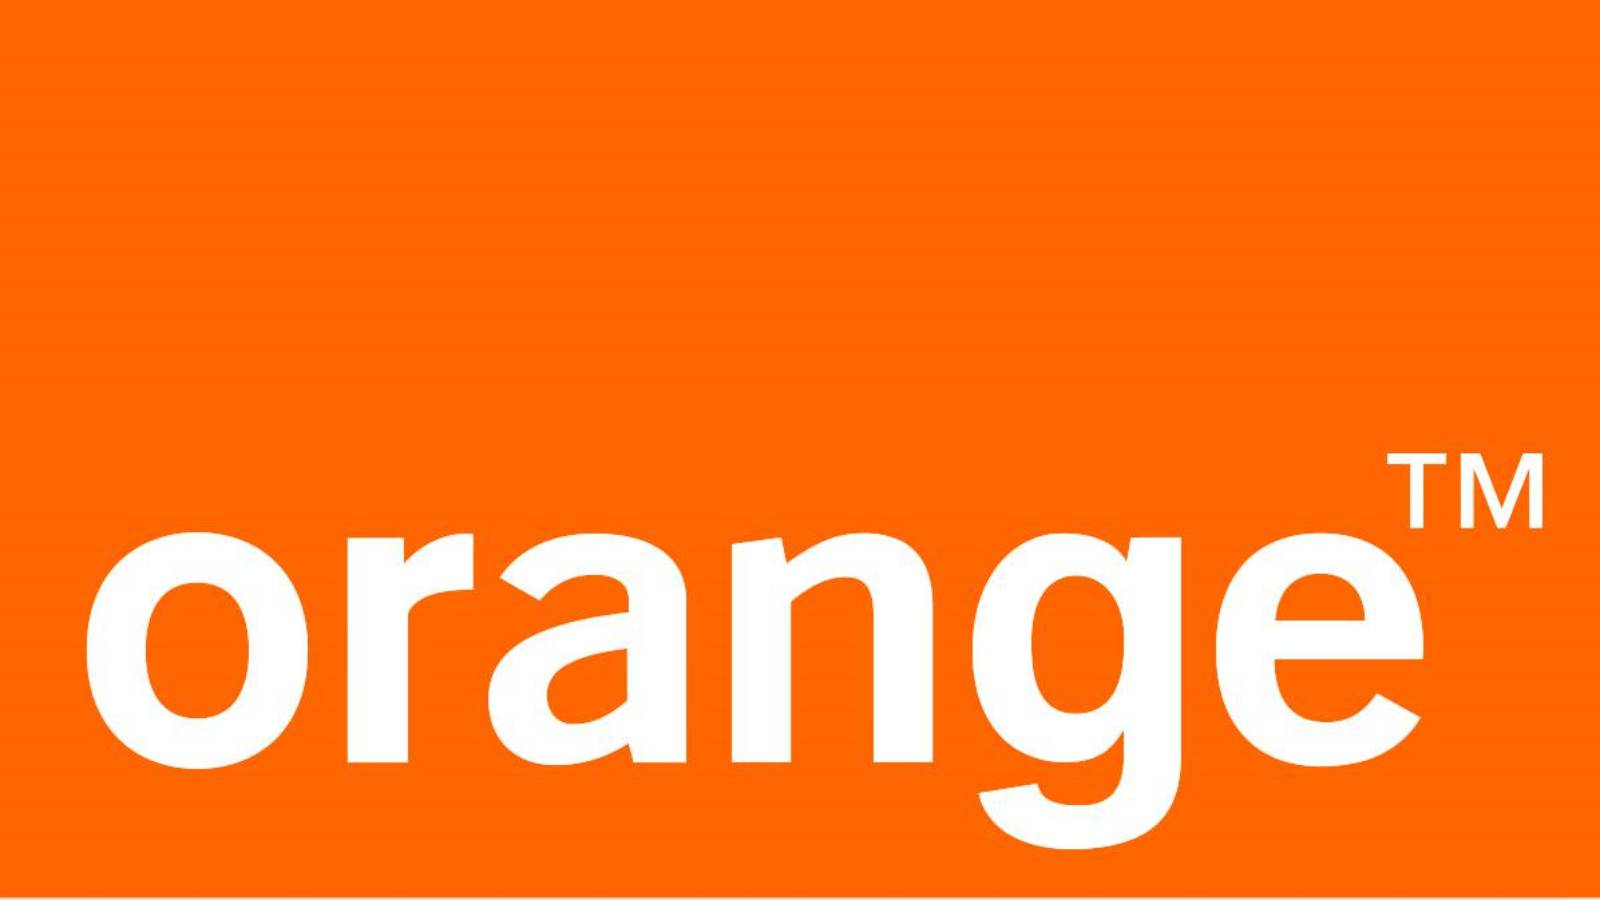 12 Luni GRATUIT Orange Surprinde Operatorul Clientii Romani